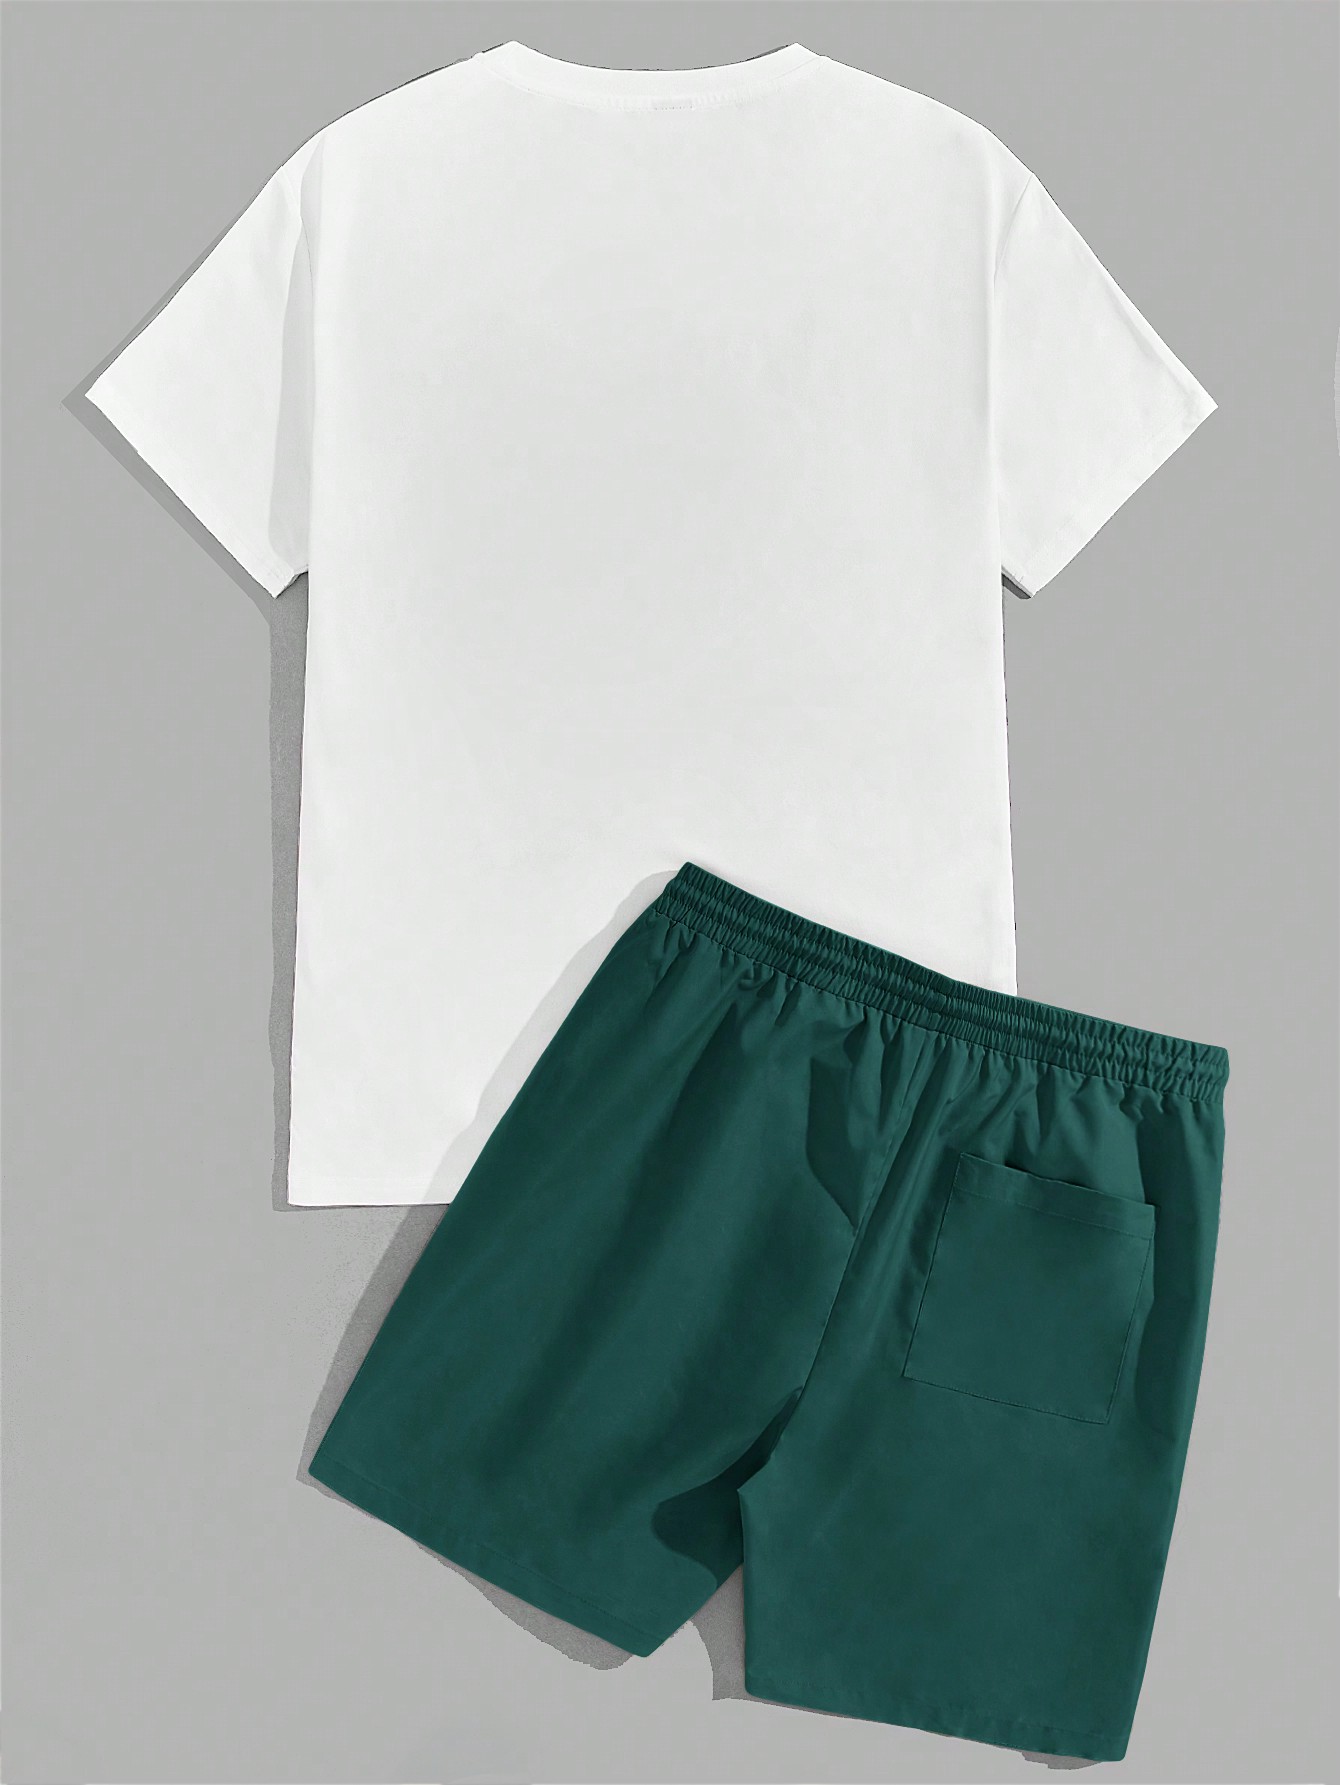 Мужская футболка с короткими рукавами и шортами на шнурке Manfinity EMRG с мультяшным и буквенным принтом, зеленый